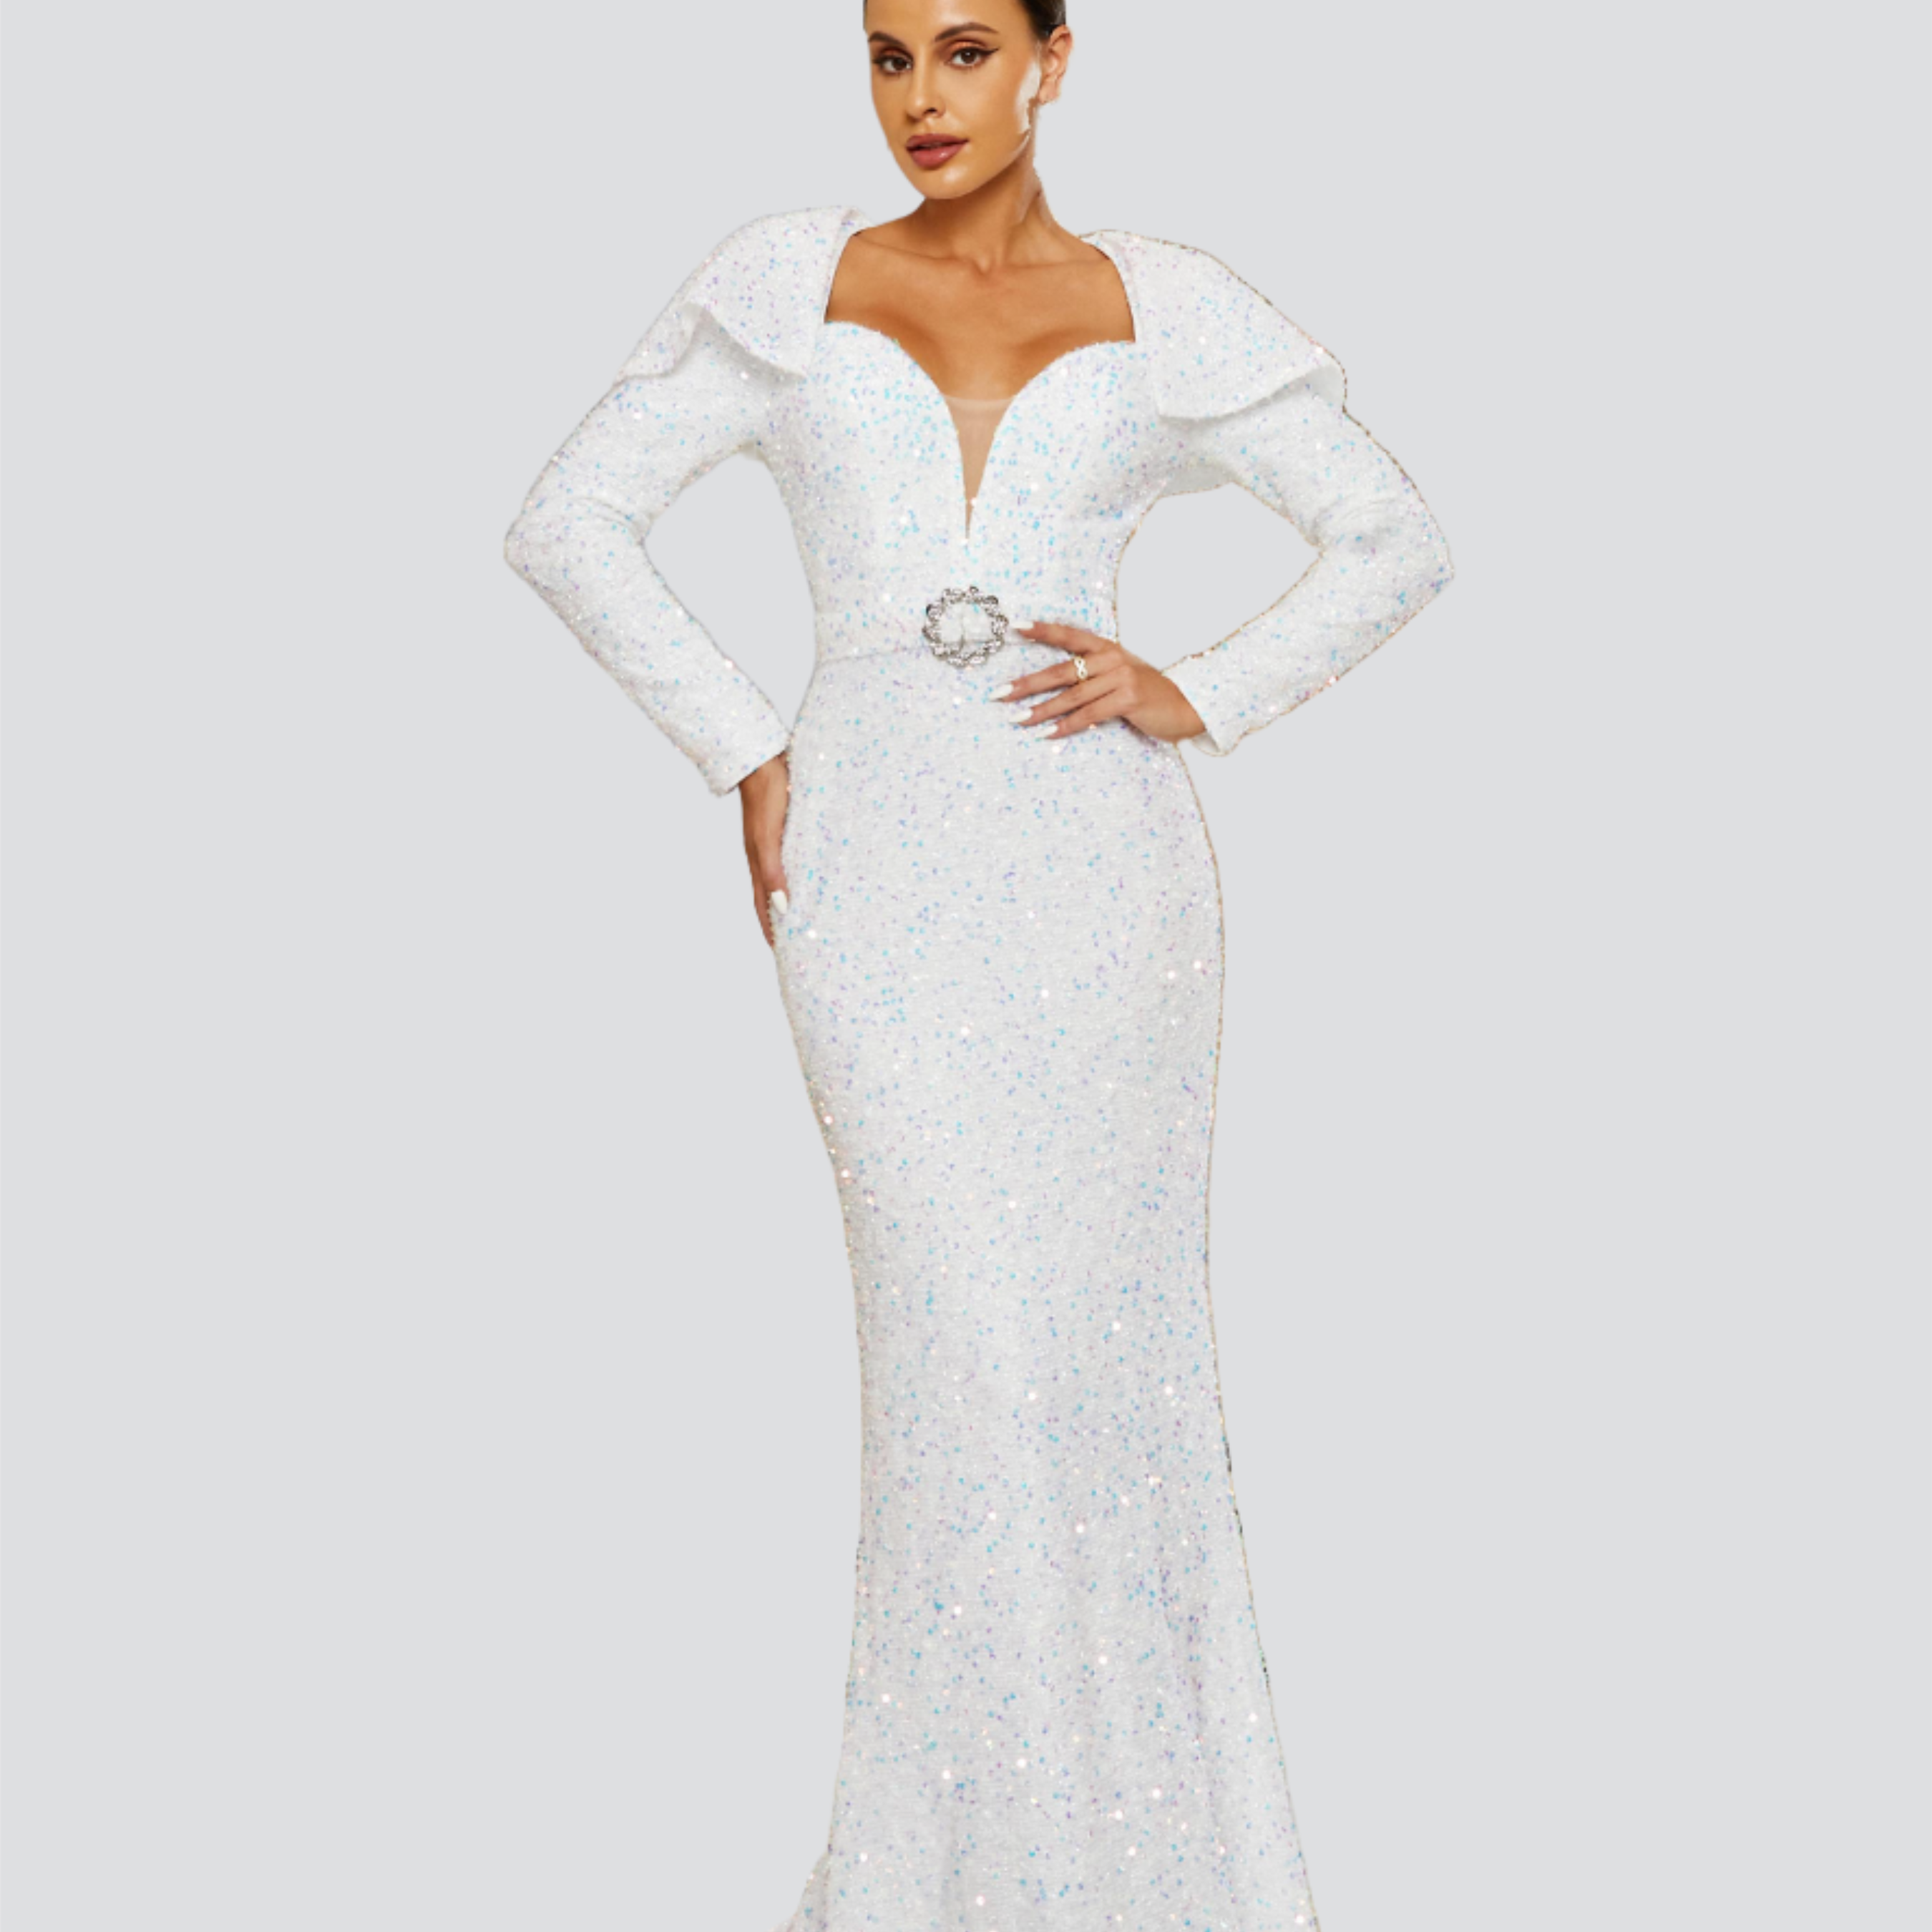 Long Sleeve White Sequin Wedding Dress RJ10662